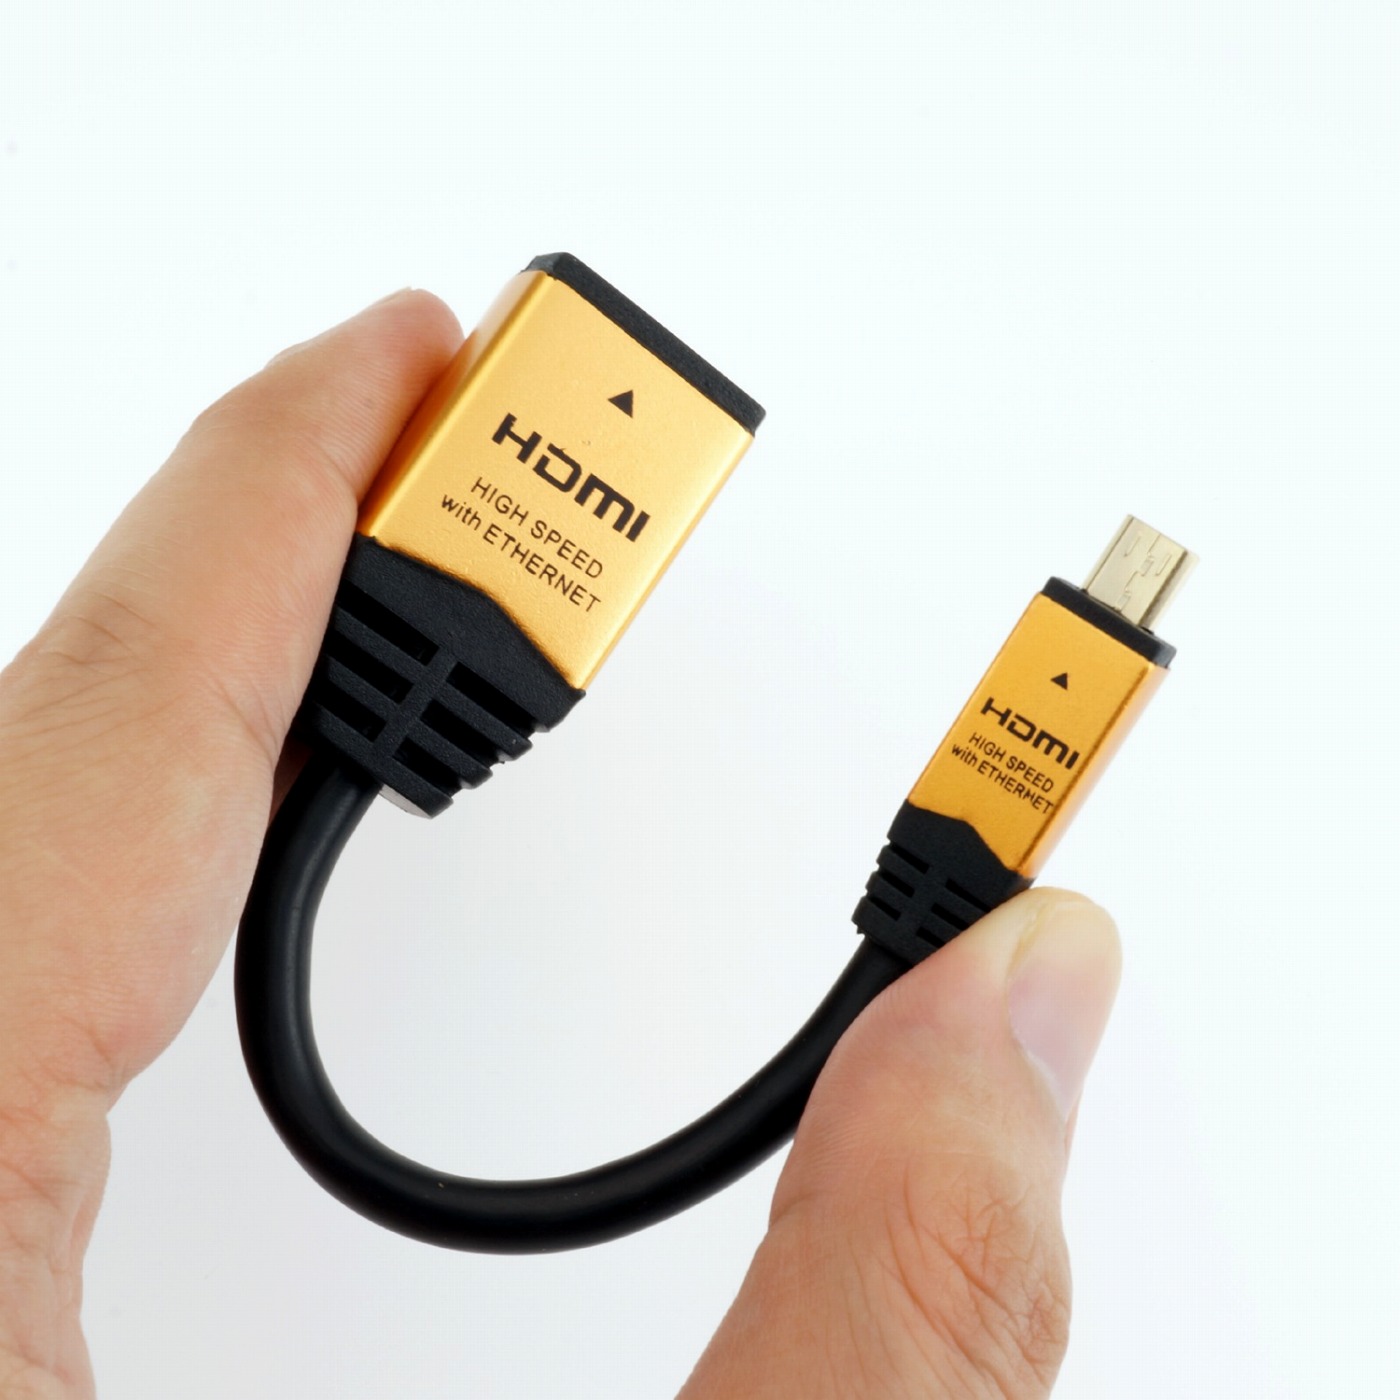 HDMI標準をHDMIマイクロ端子に変換 HDMIマイクロ変換アダプタ | HORIC